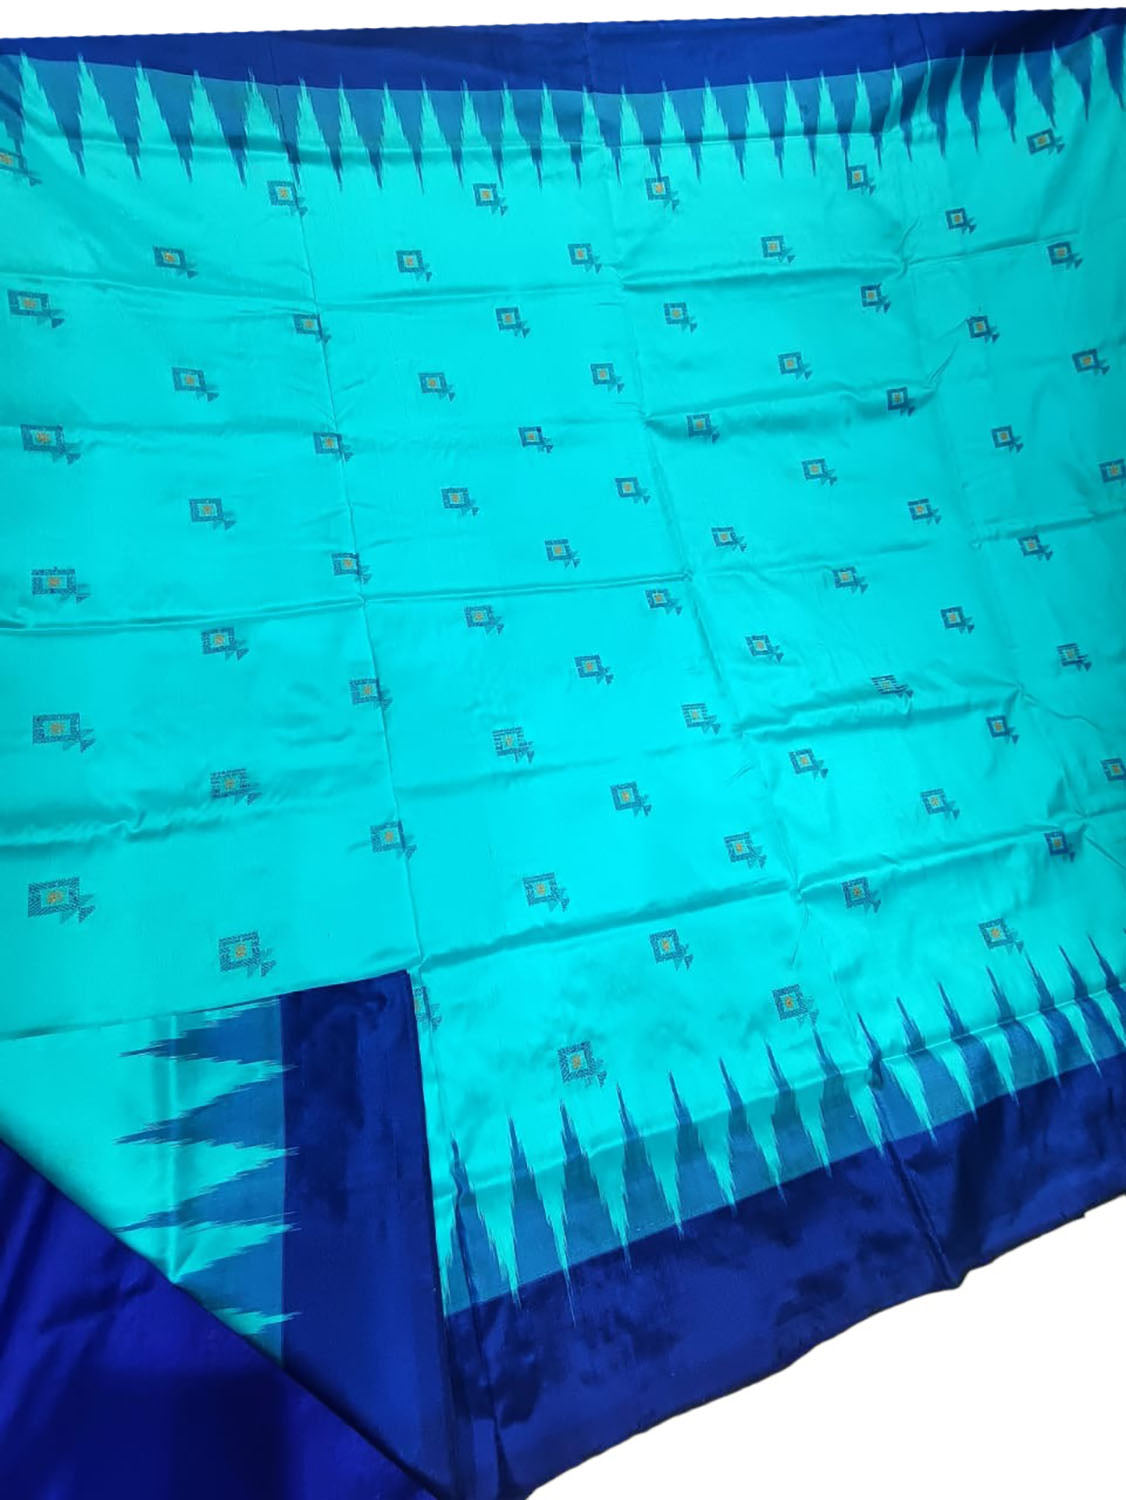 Stunning Blue Handloom Ikat Silk Saree - Authentic Sambalpuri Design